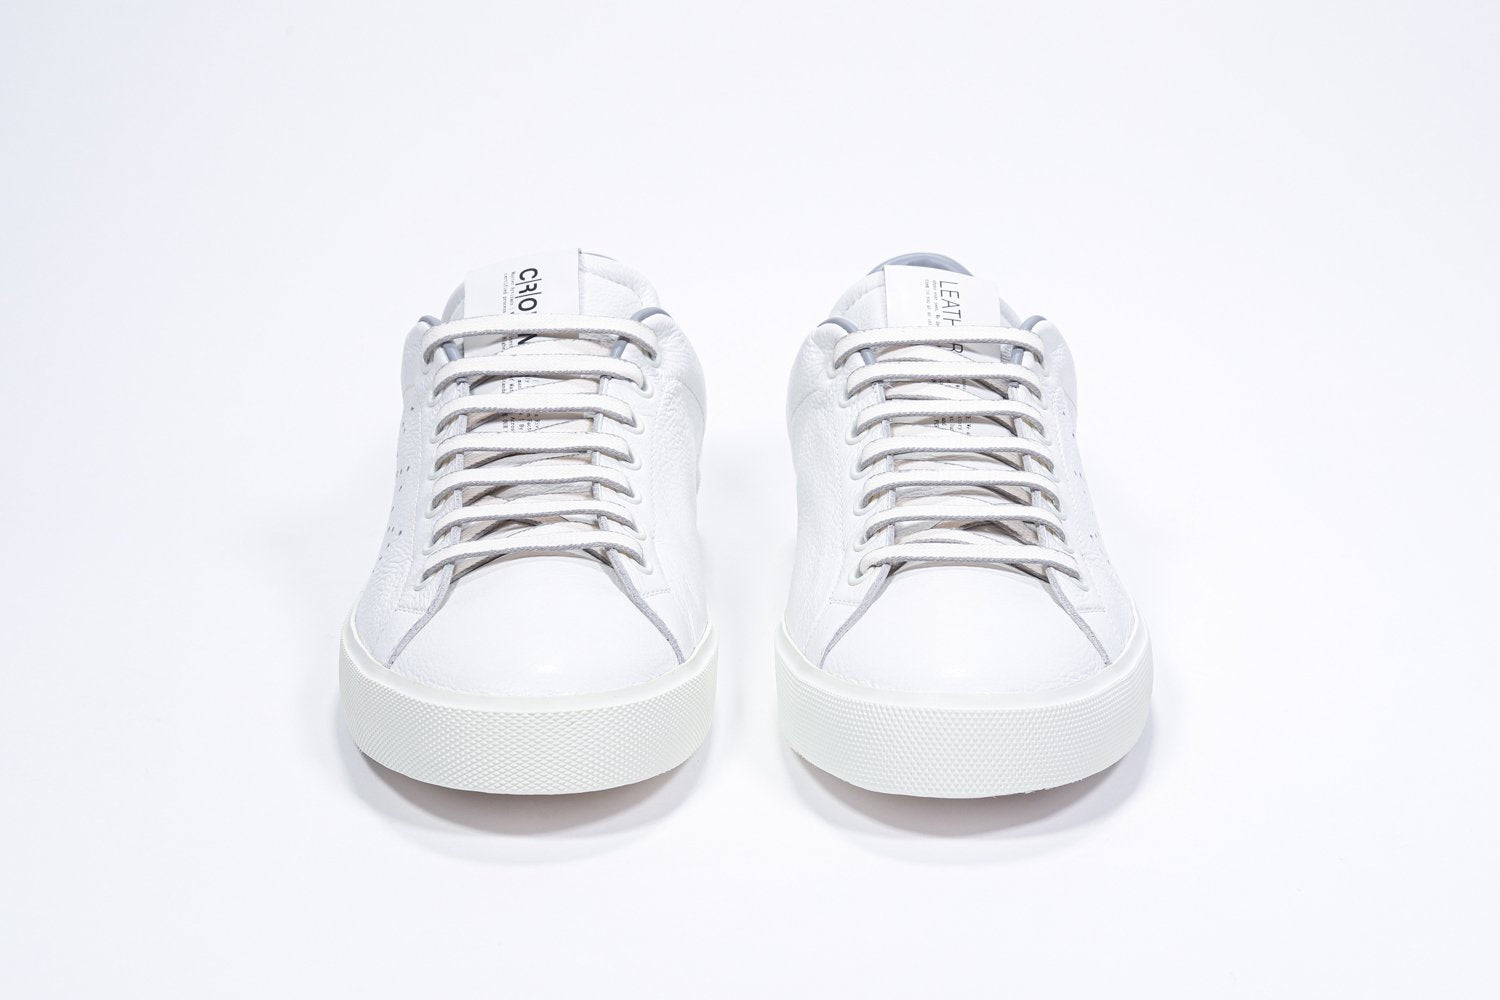 Vue avant de la chaussure blanche sneaker avec des détails gris clair et le logo perforé de la couronne sur la tige. Tige en cuir et semelle en caoutchouc blanc.